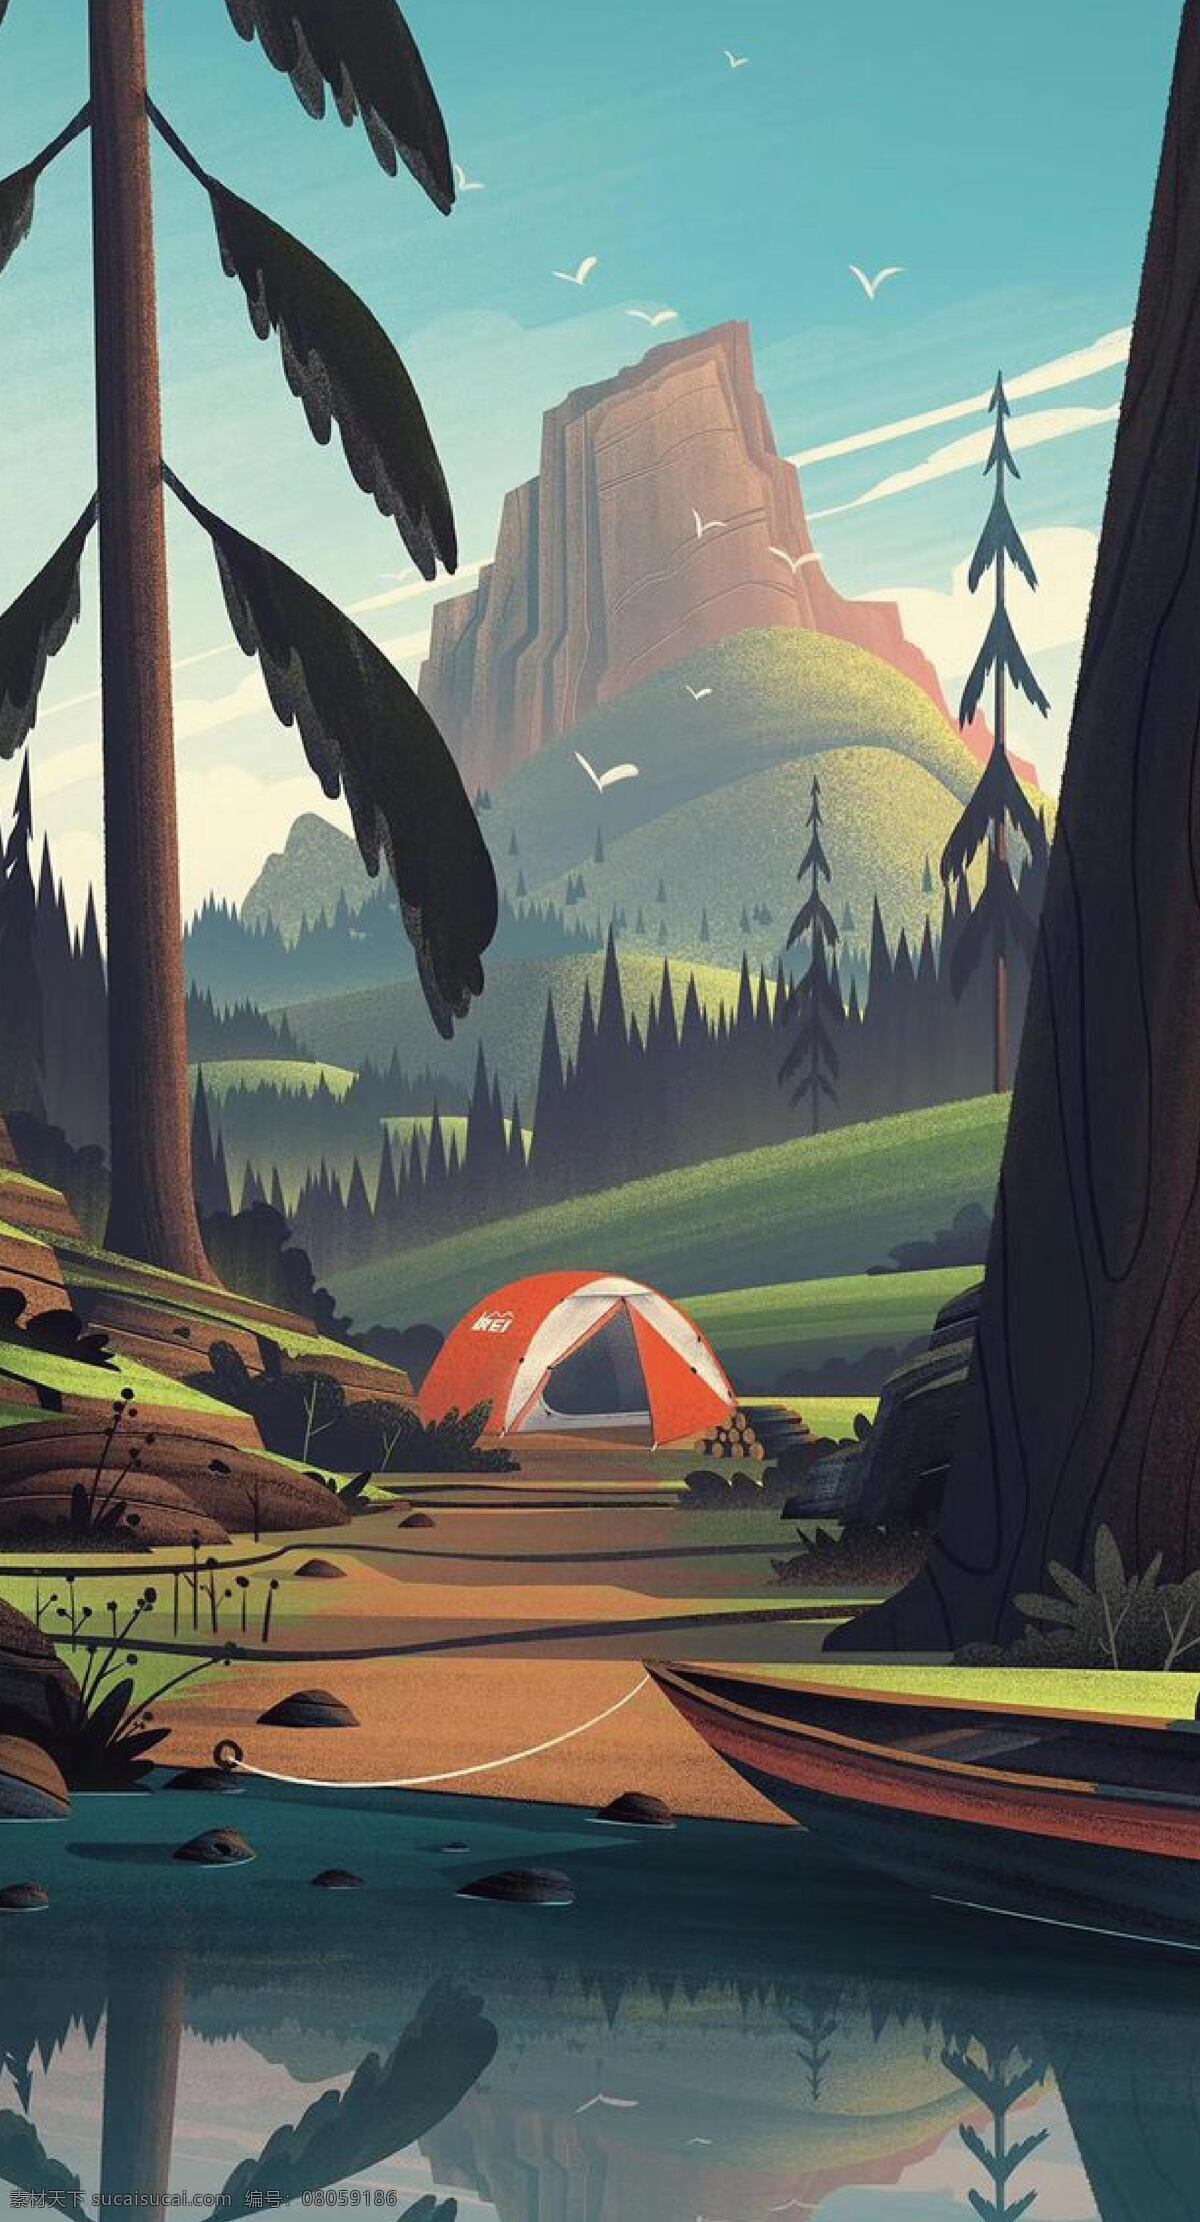 野外生活 树木 湖泊 帐篷 船 插画 动漫动画 风景漫画